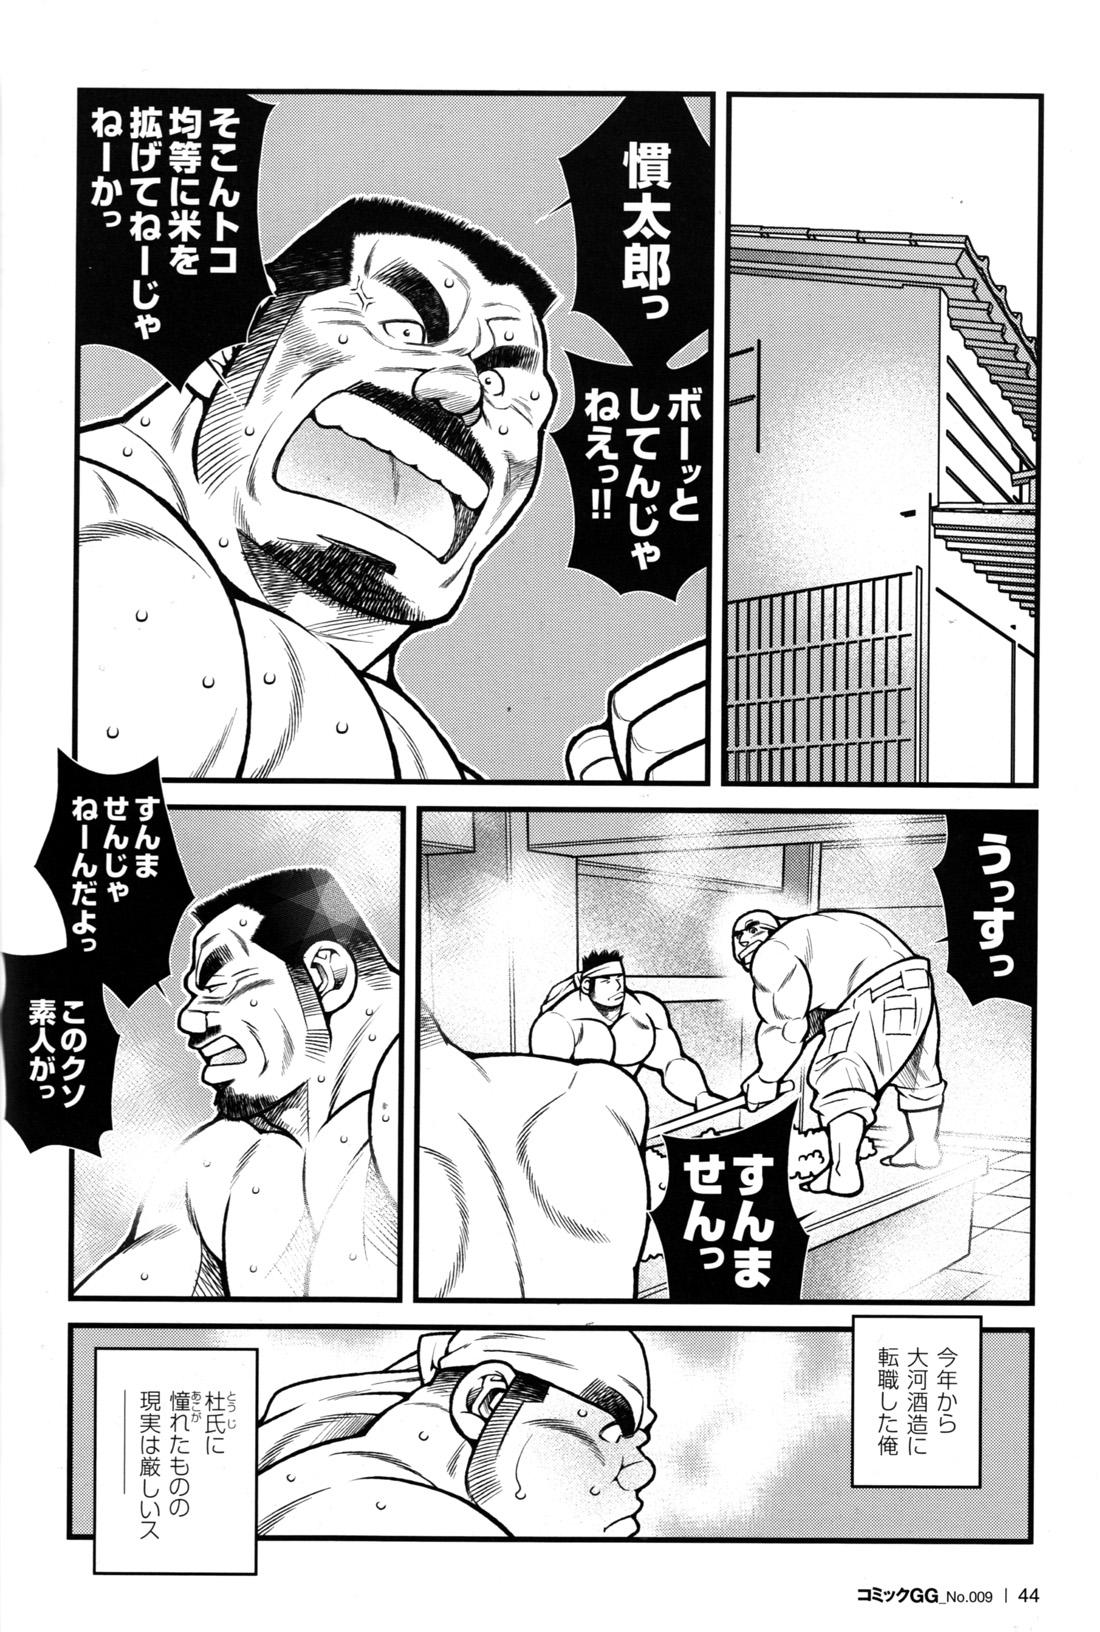 Comic G-men Gaho No.09 Gacchibi Zeme 42